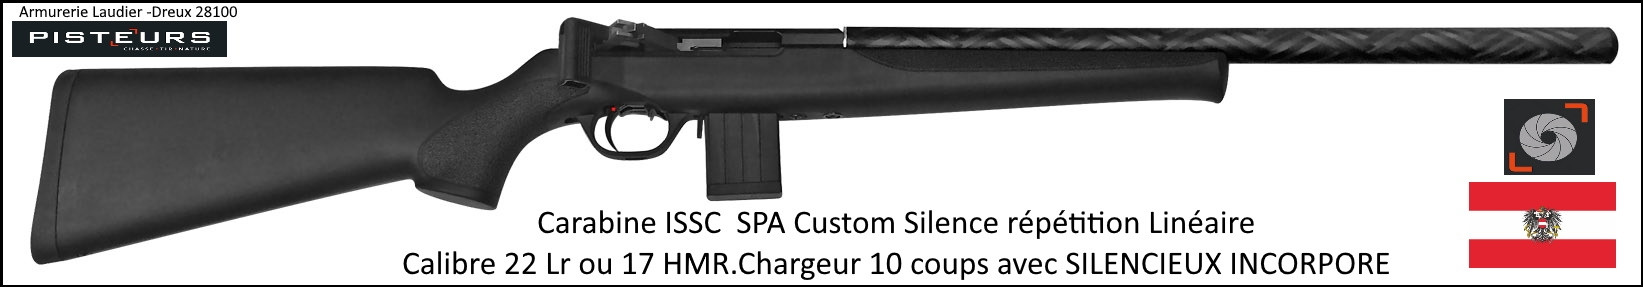 Carabine ISSC Calibre 22 Lr SPA Standard Black CUSTOM SILENCE Autriche  Répétition Linéaire-Promotion-Ref issc-896208-col